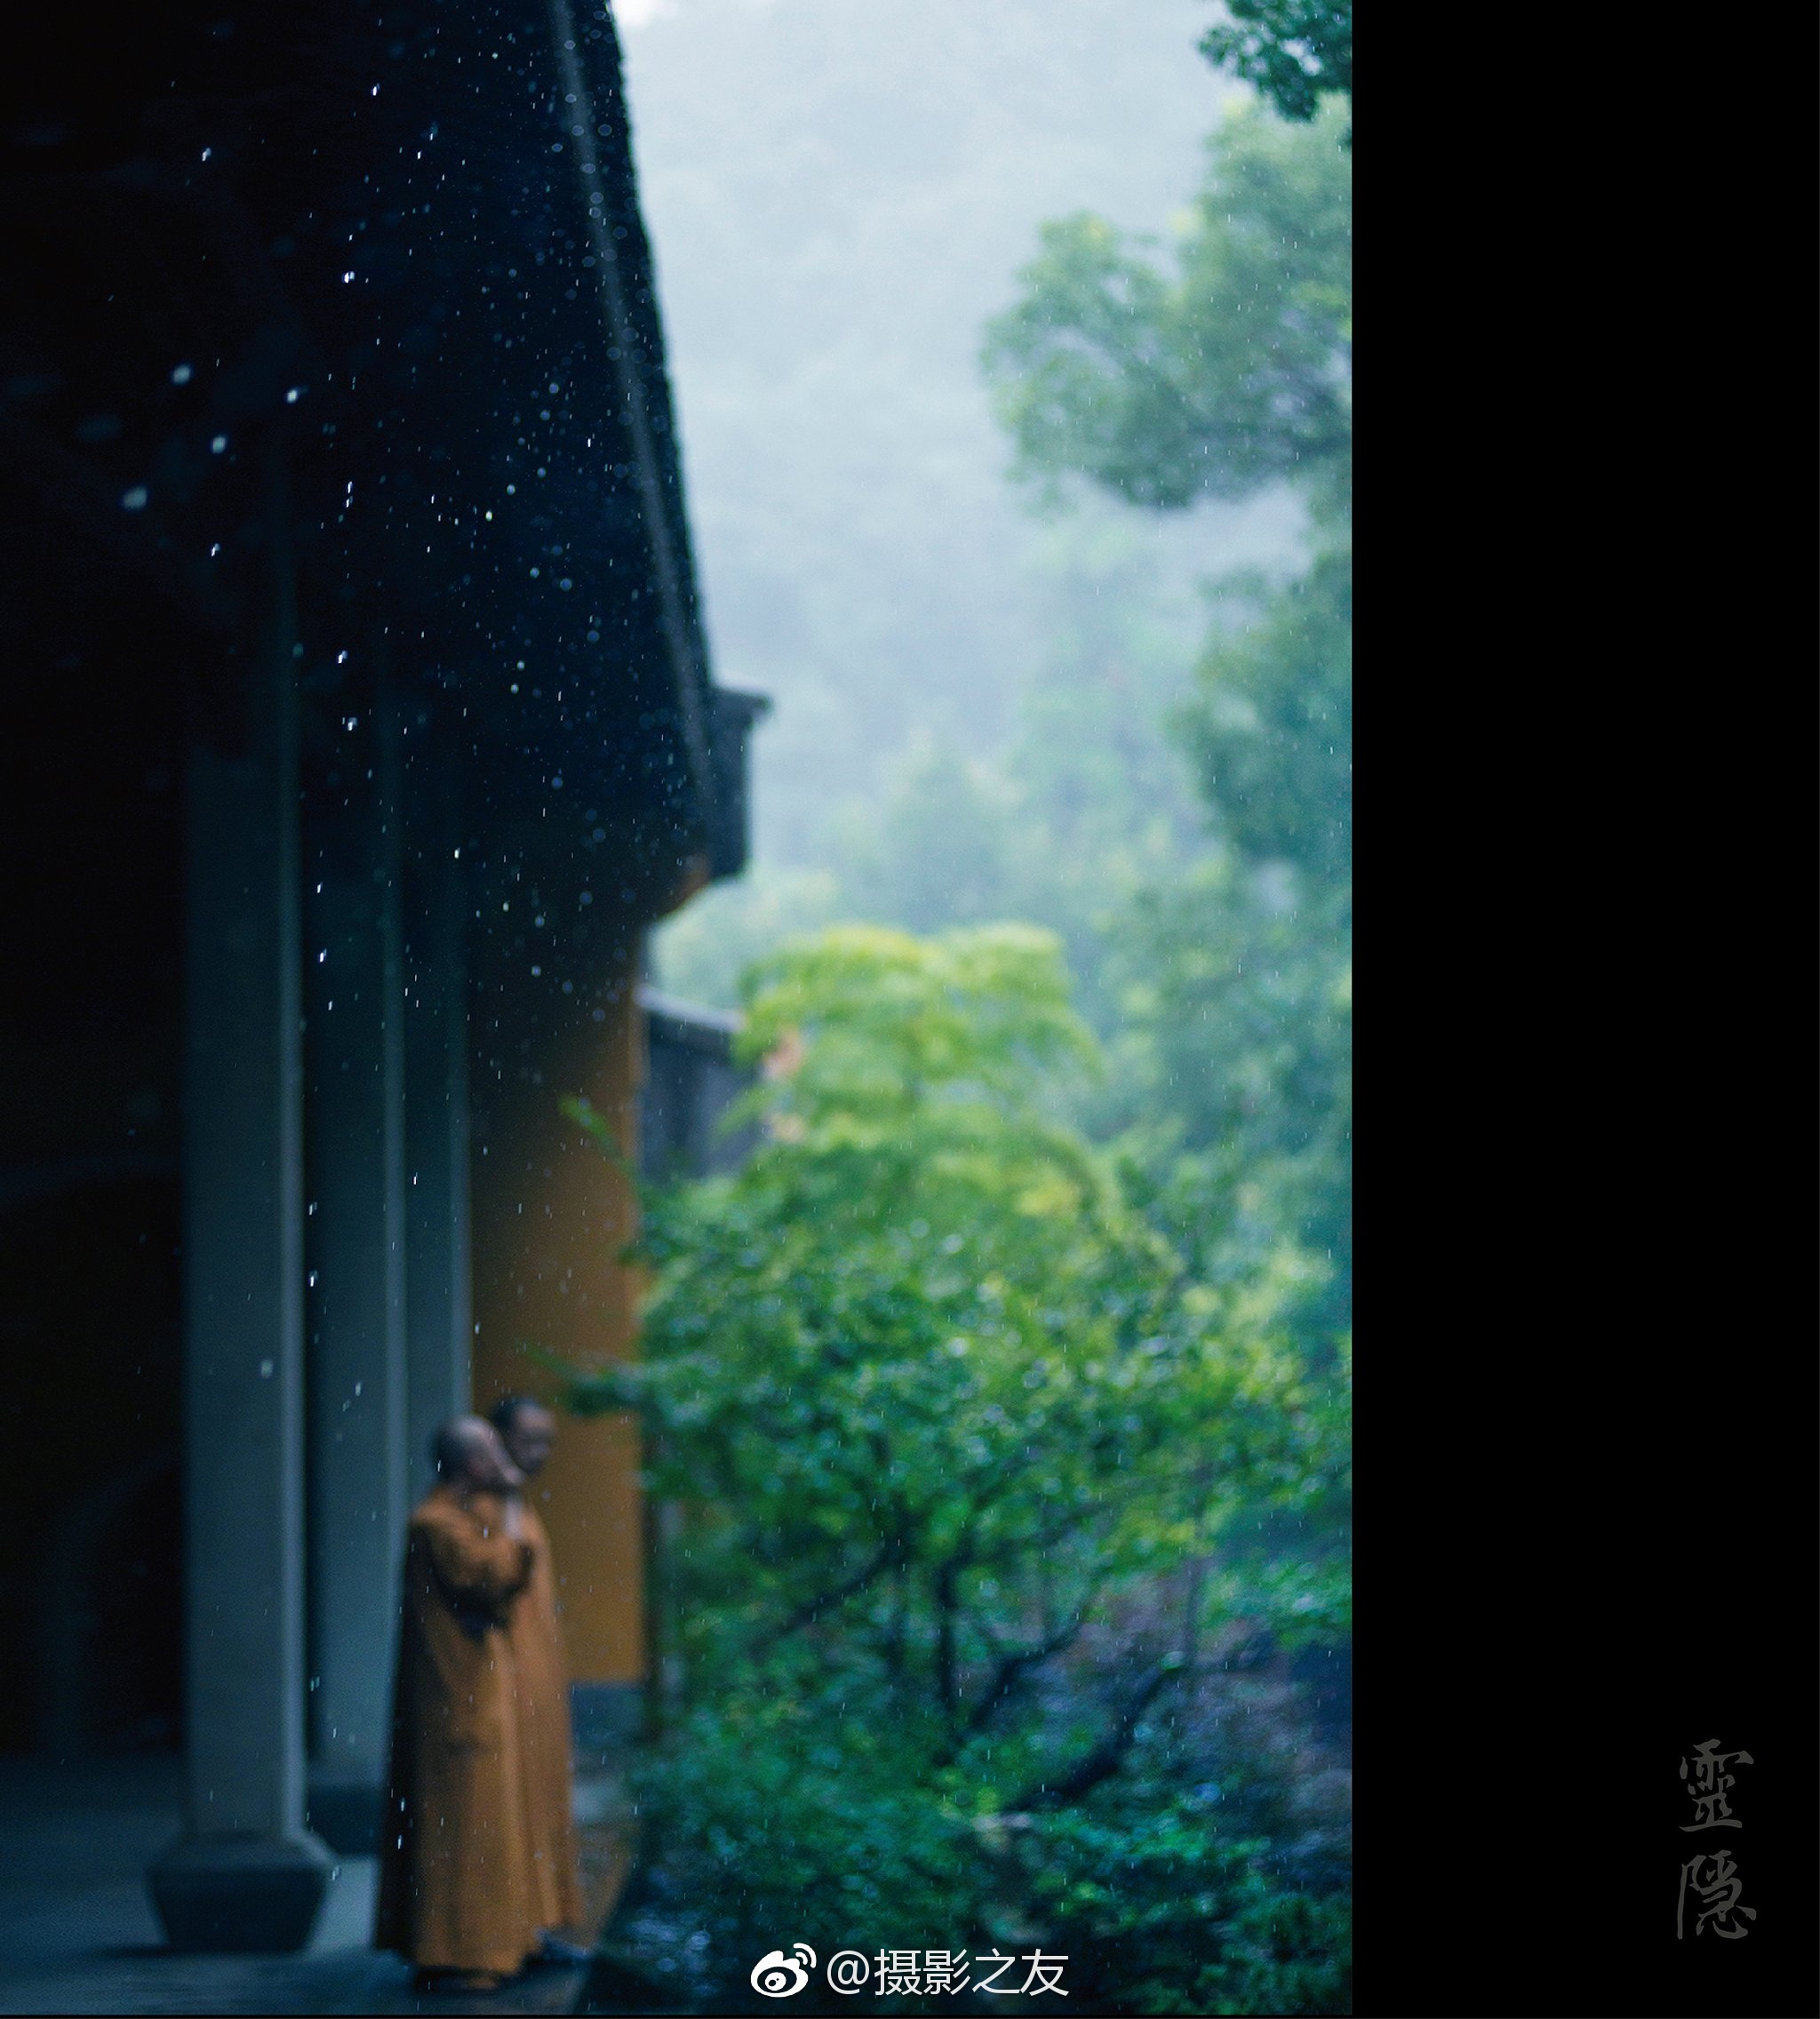 摄影师 拍摄的雨天灵隐,杭州处处禅意,雨中尤美